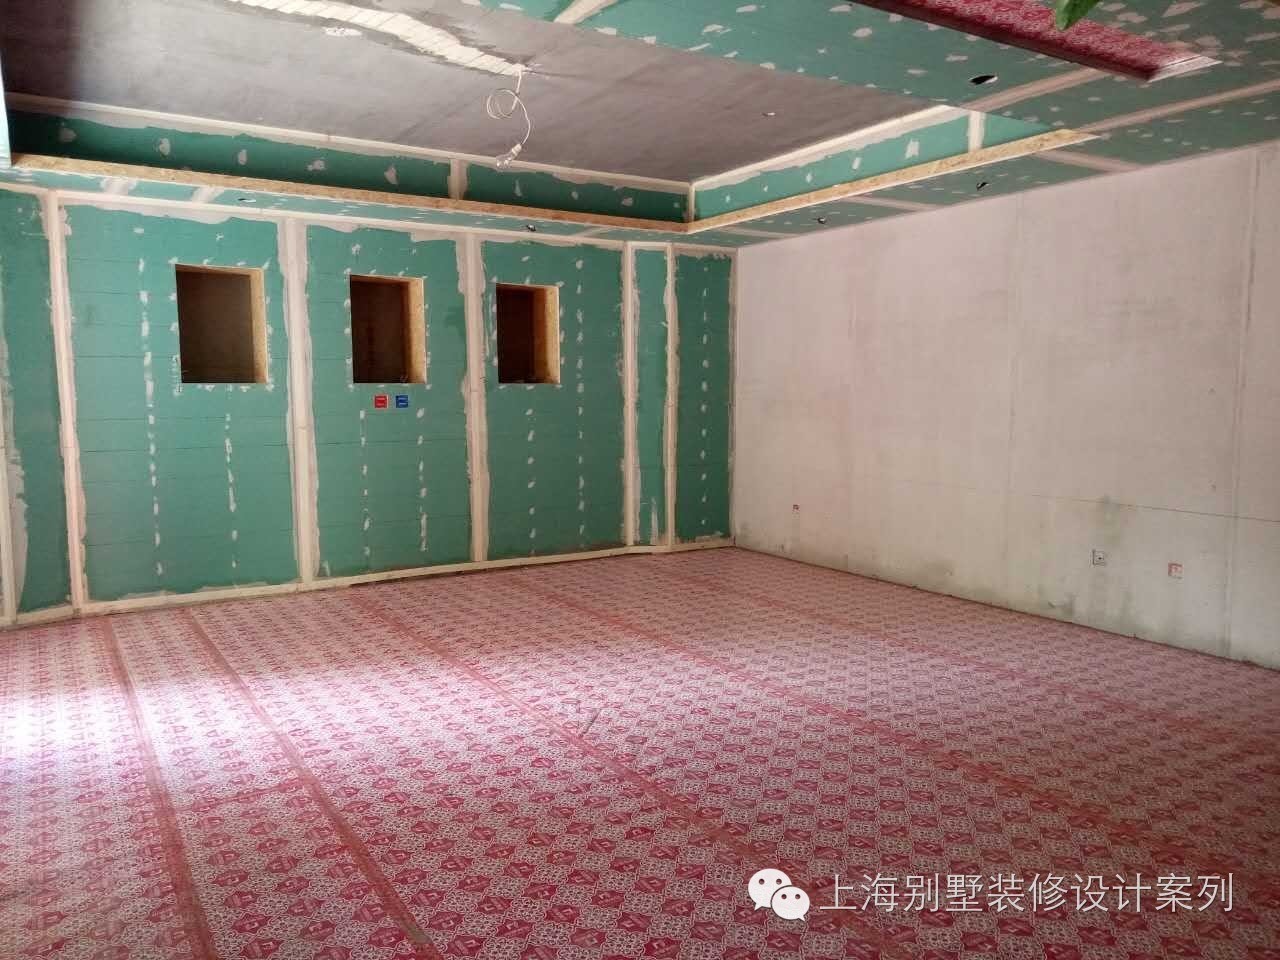 上海天马高尔夫别墅装修设计施工现场情况及效果图